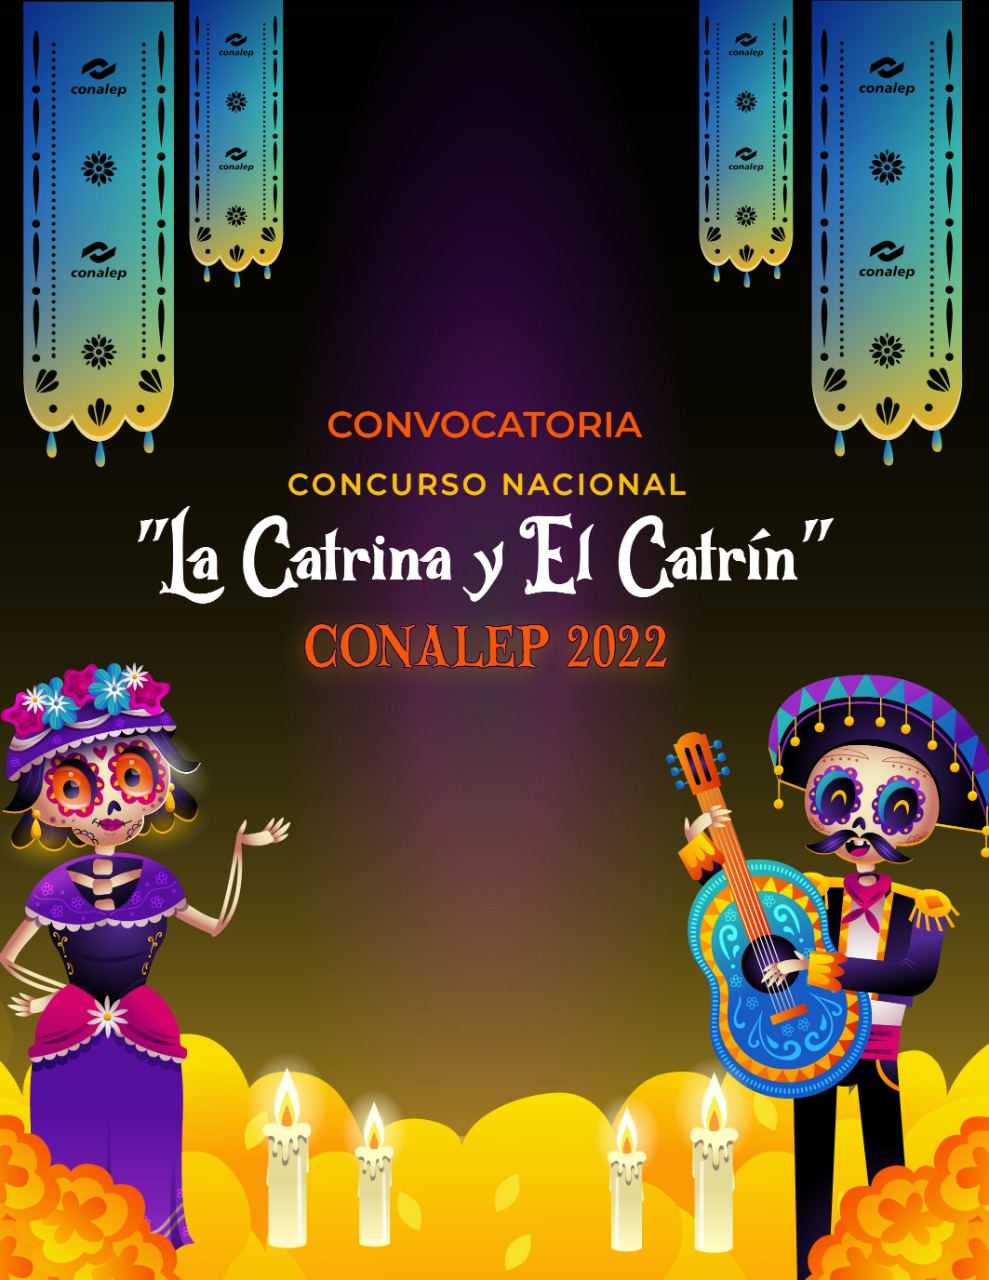 La catrina y el catrin CONALEP 2022